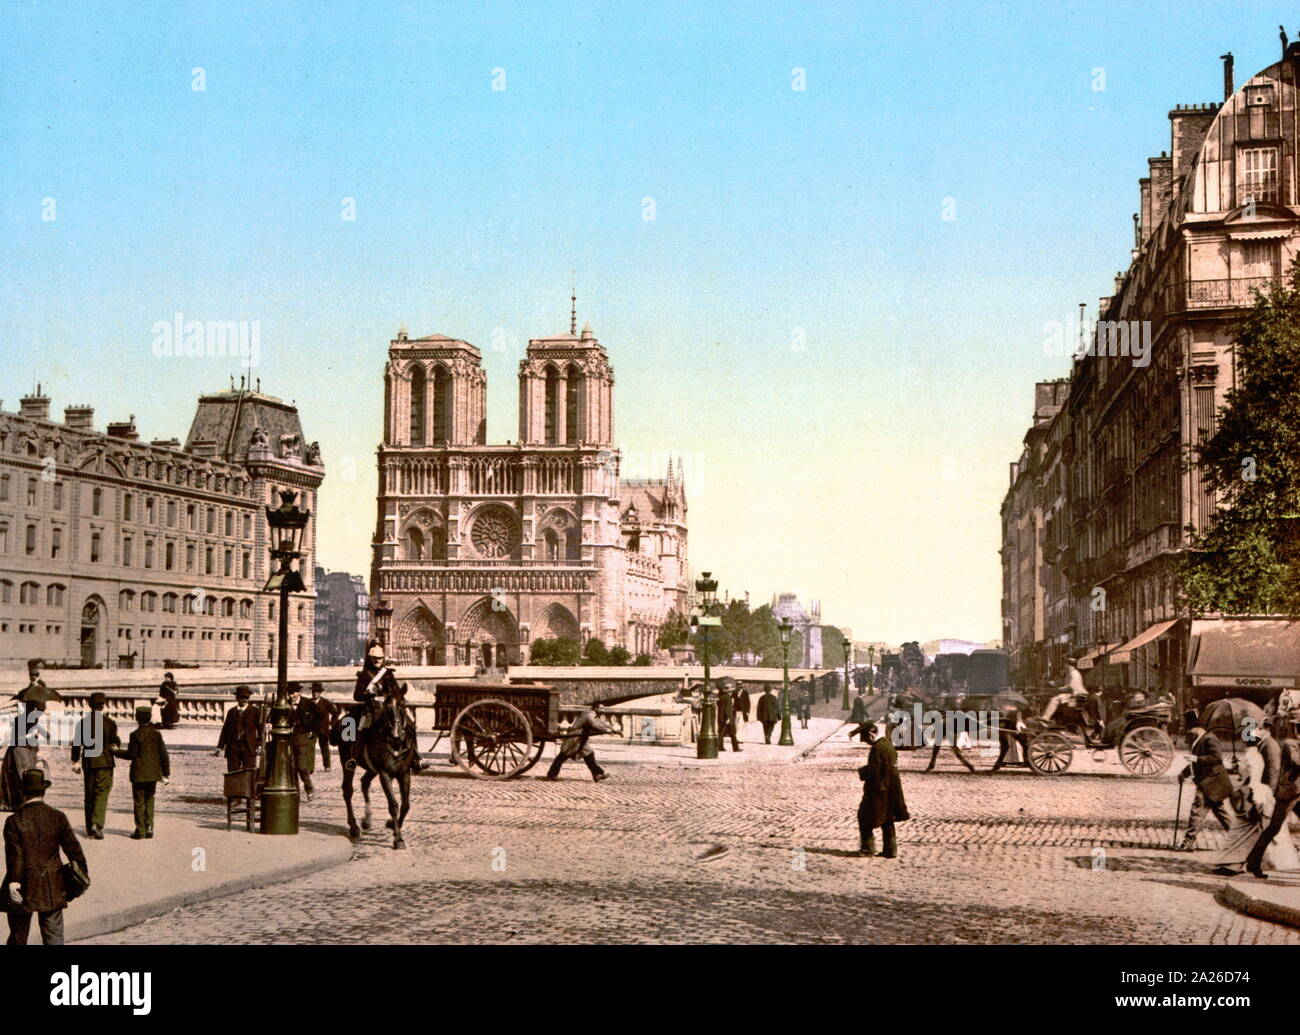 Foto von der Kathedrale Notre Dame in Paris Frankreich 1900 Eingefärbte Stockfoto